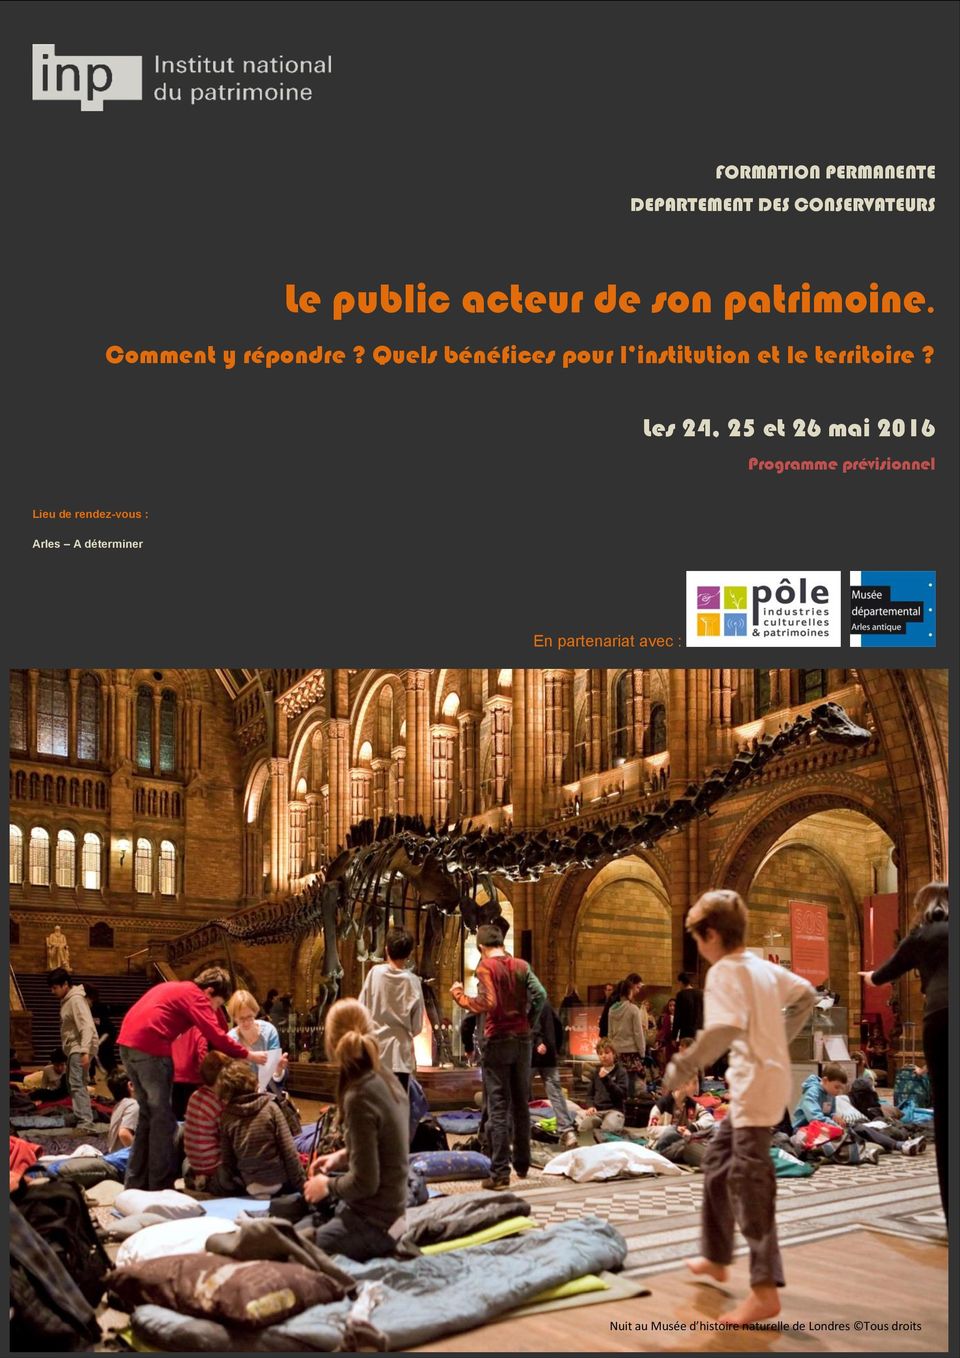 Les 24, 25 et 26 mai 2016 Programme prévisionnel Lieu de rendez-vous : Arles A